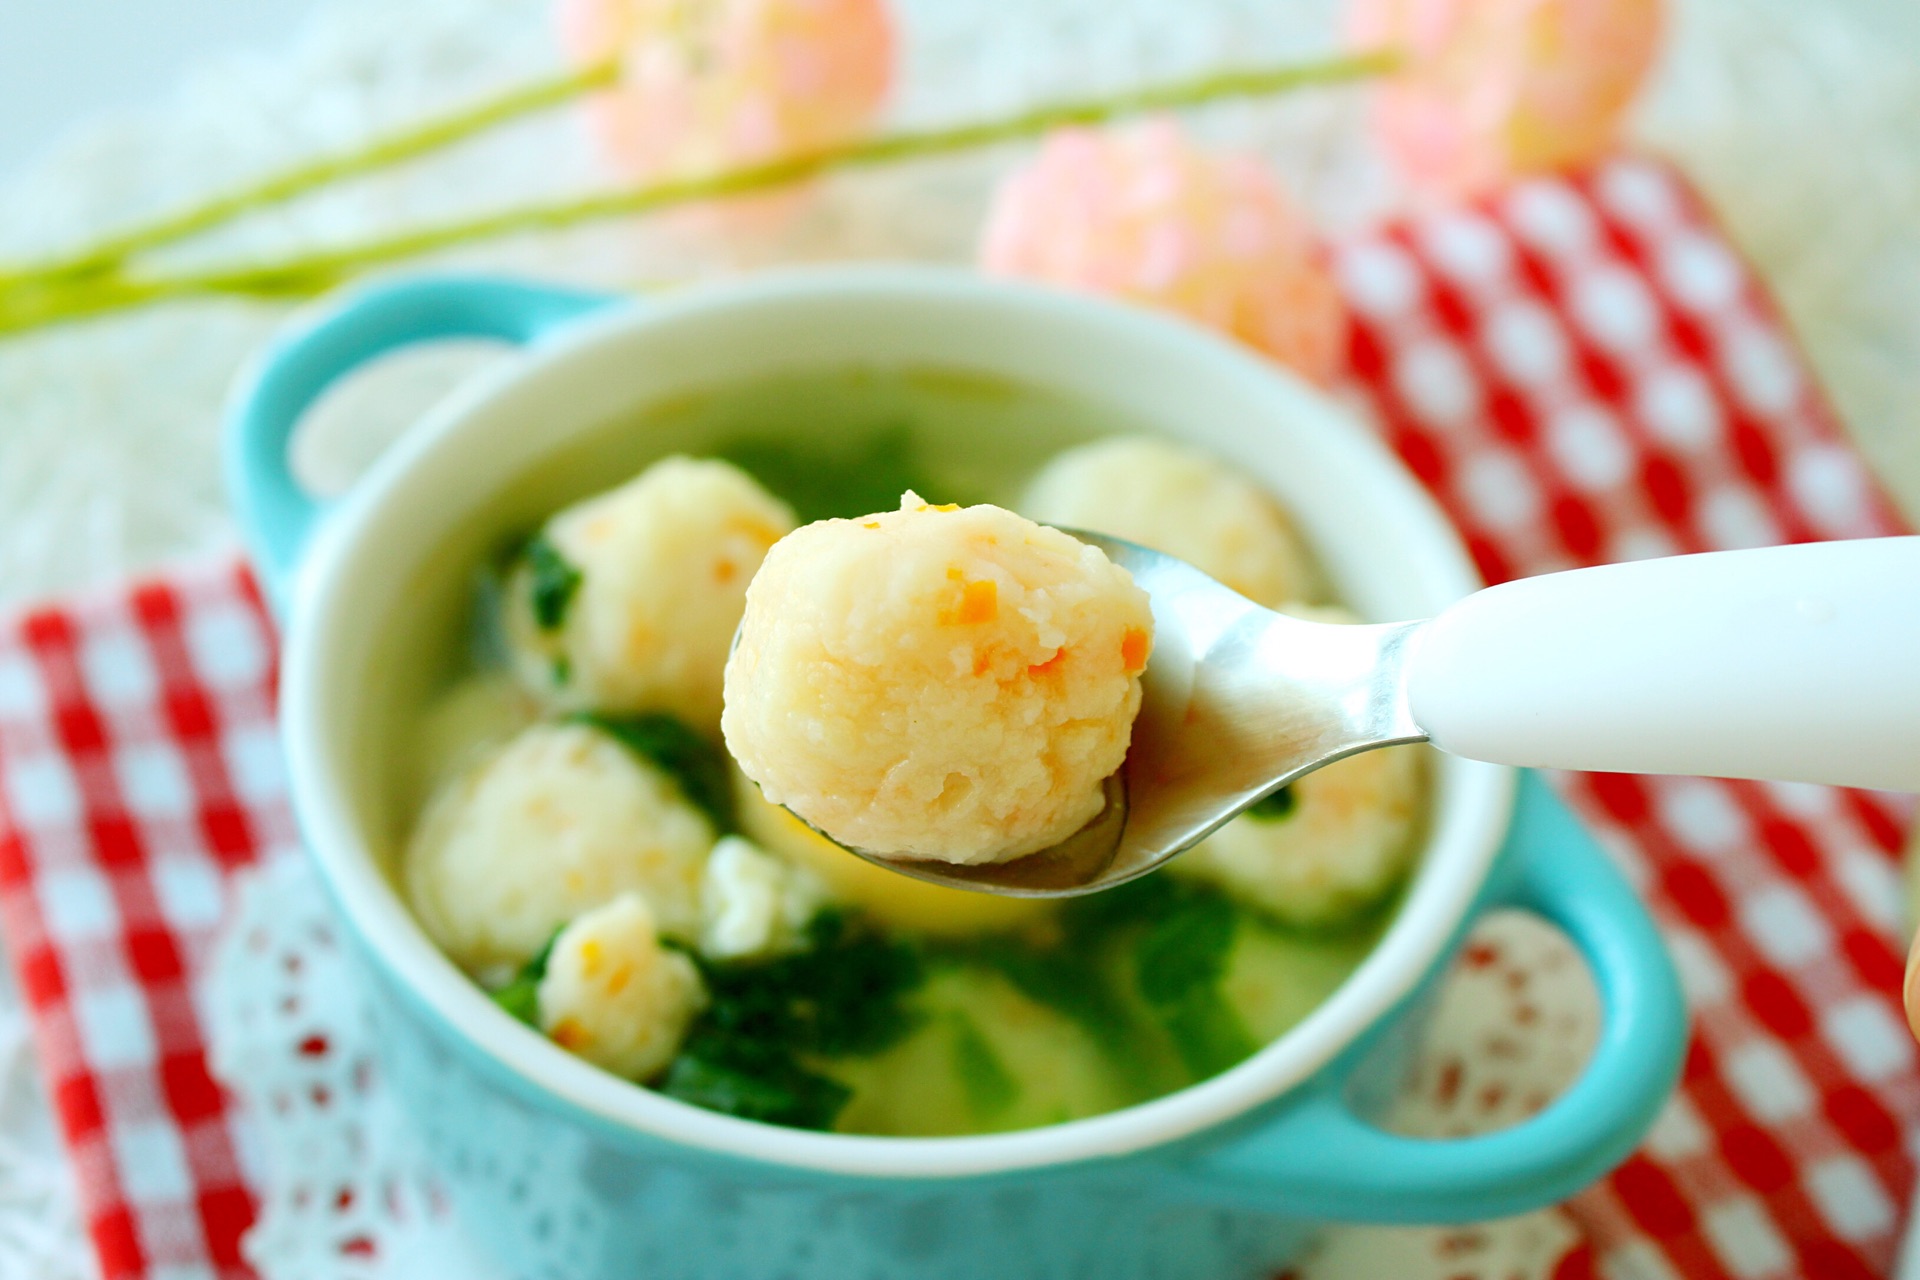 鱼丸汤的做法简单到只有两步倒下捞出，好吃到一个字“鲜”_哔哩哔哩 (゜-゜)つロ 干杯~-bilibili